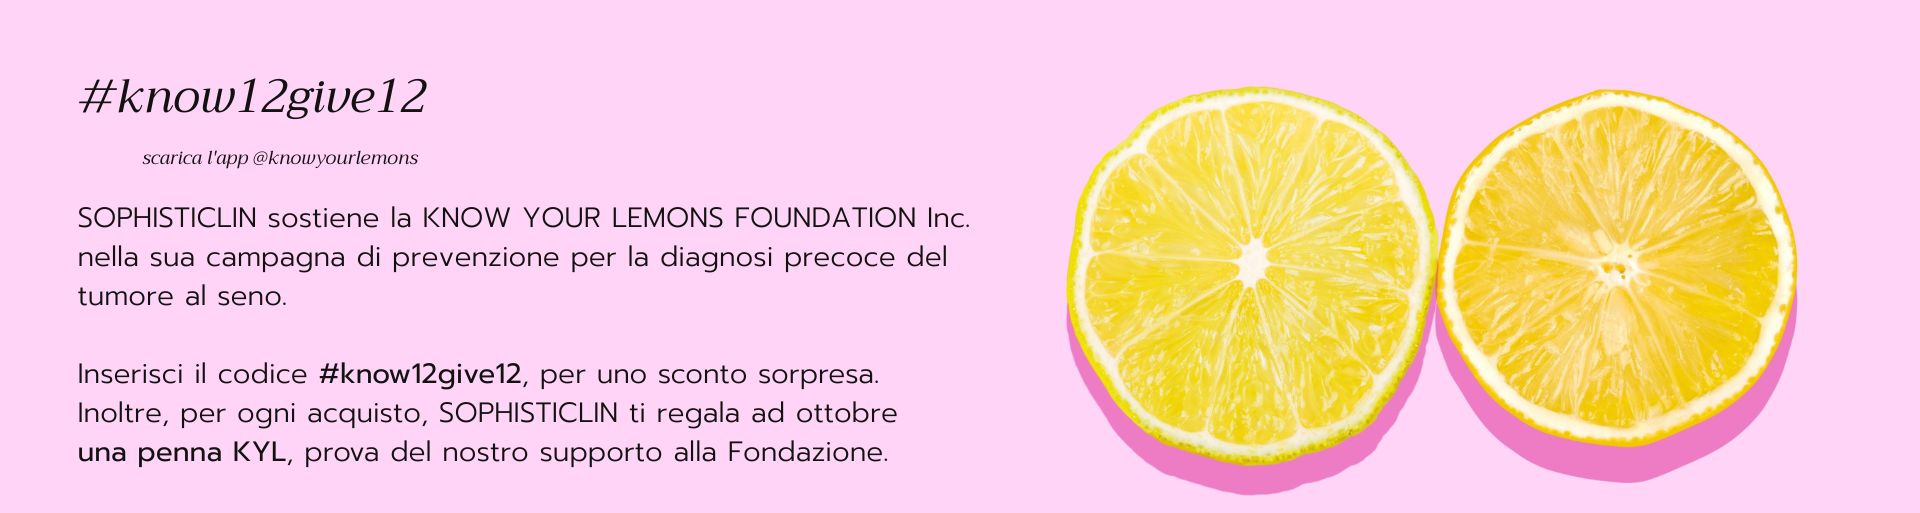 Prevenzione tumore al seno Know Your Lemons Sophisticlin